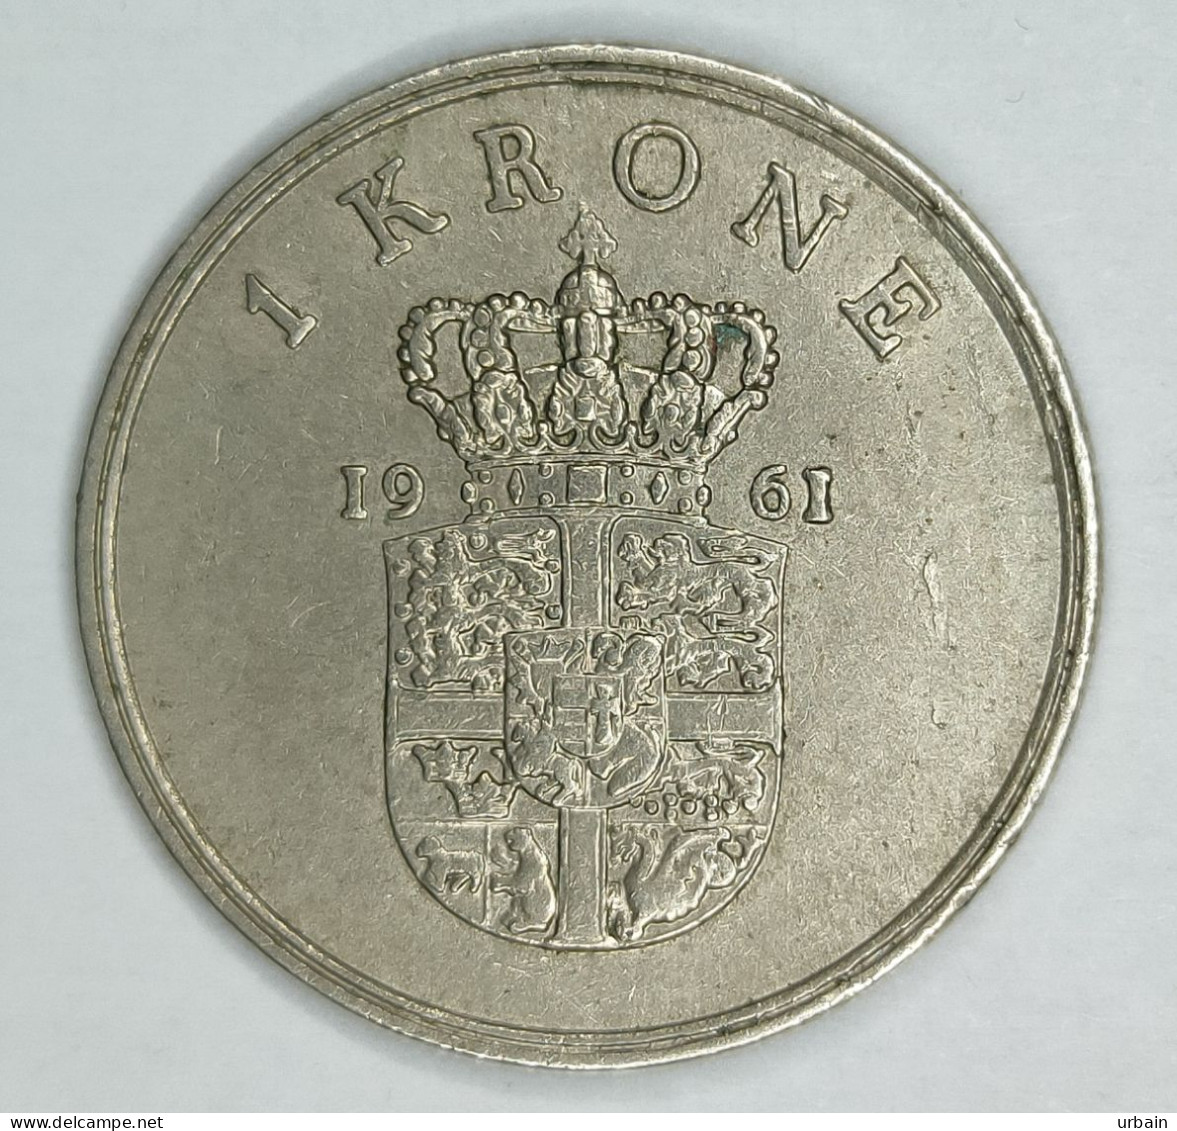 Lot 15 Coins - DENMARK - From 1958 To 1976 - Frederick IX, Margrethe II - Denmark